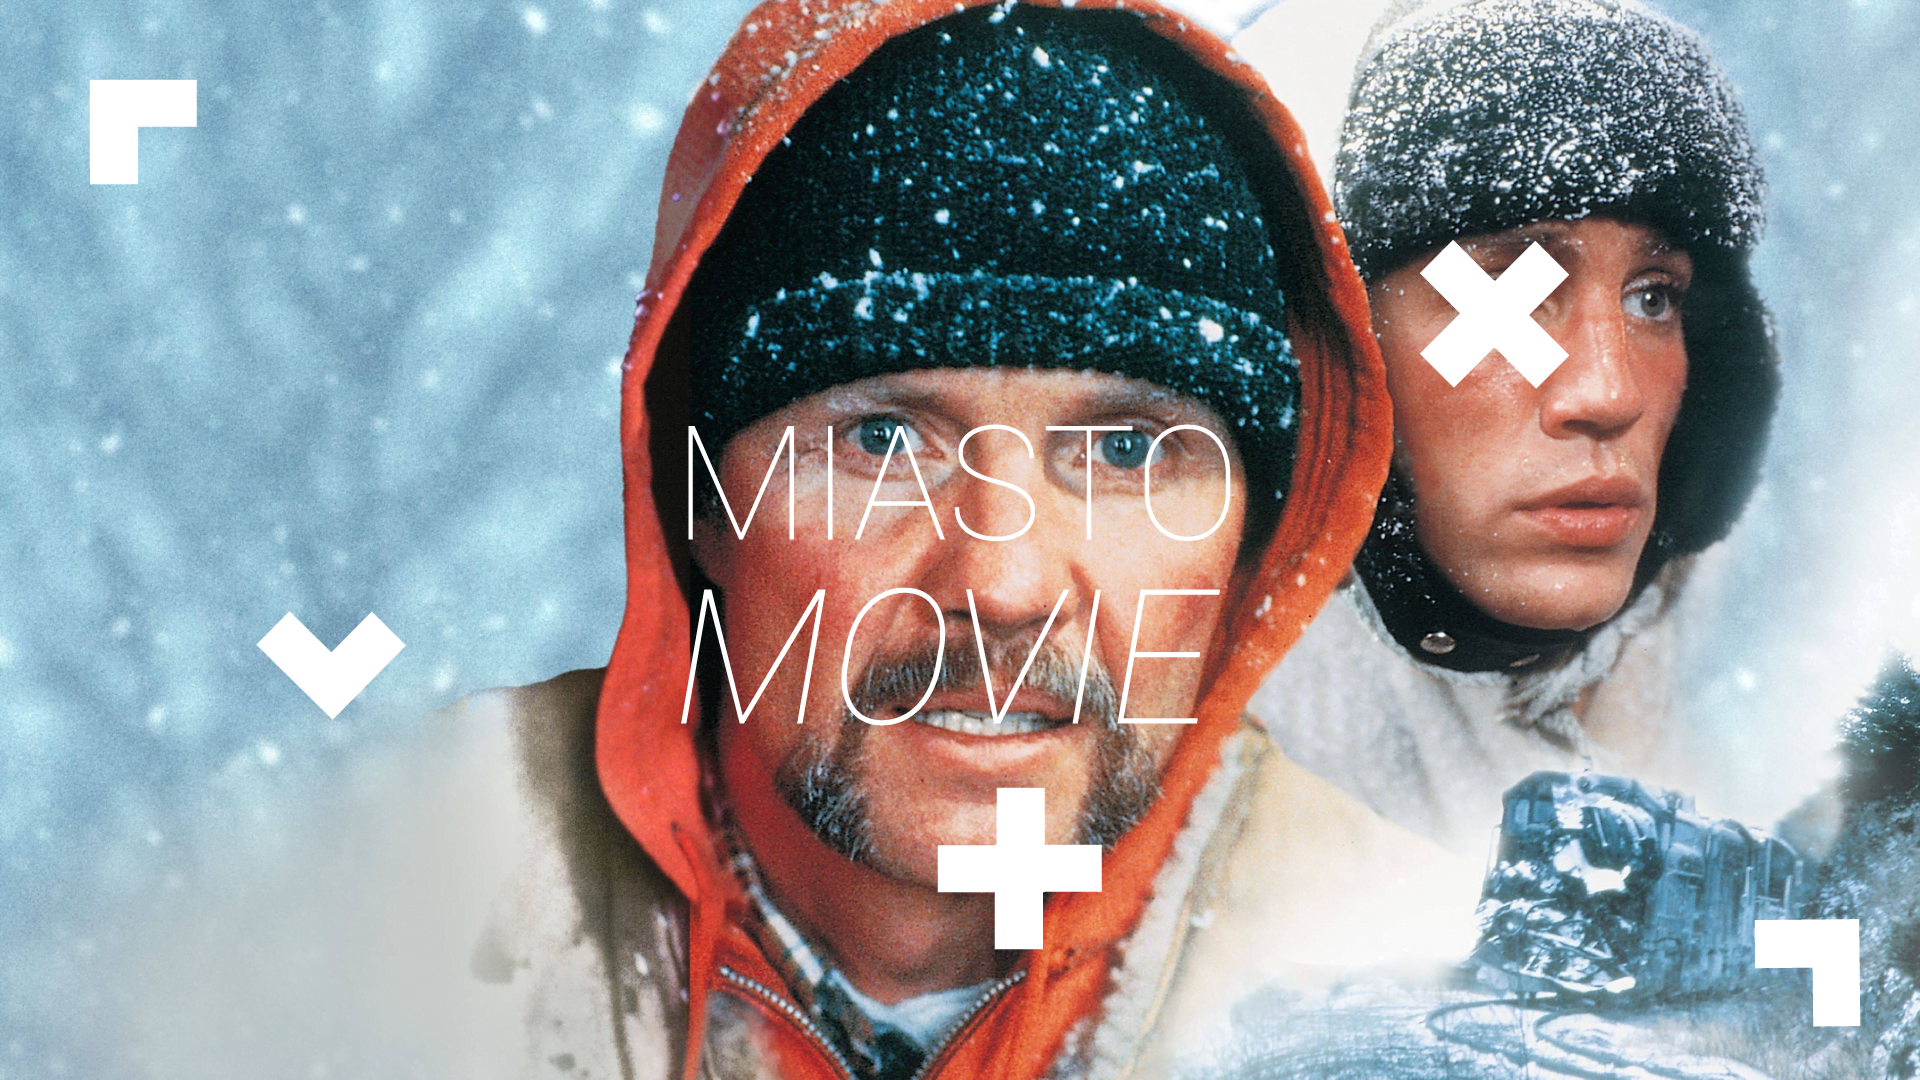 Kadr z filmu "Uciekający pociag". Z białej mgły wyłaniają się dwaj mężczyźni w kurtkach, czapkach. Sypie śnieg. W dolnym prawym rogu widać jadący w śniegu pociąg. są Na zdjęciu widnieje biały napis "Miasto Movie".